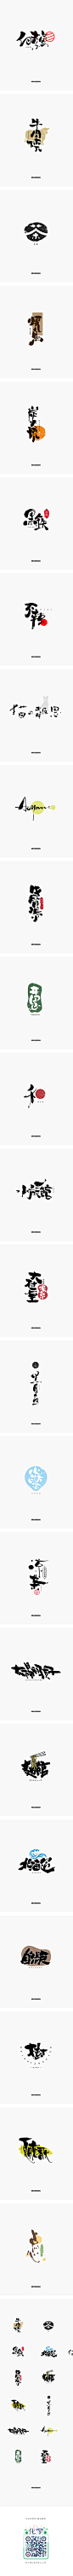 日式书法标志合辑-字体传奇网-中国首个字体品牌设计师交流网,日式书法标志合辑-字体传奇网-中国首个字体品牌设计师交流网